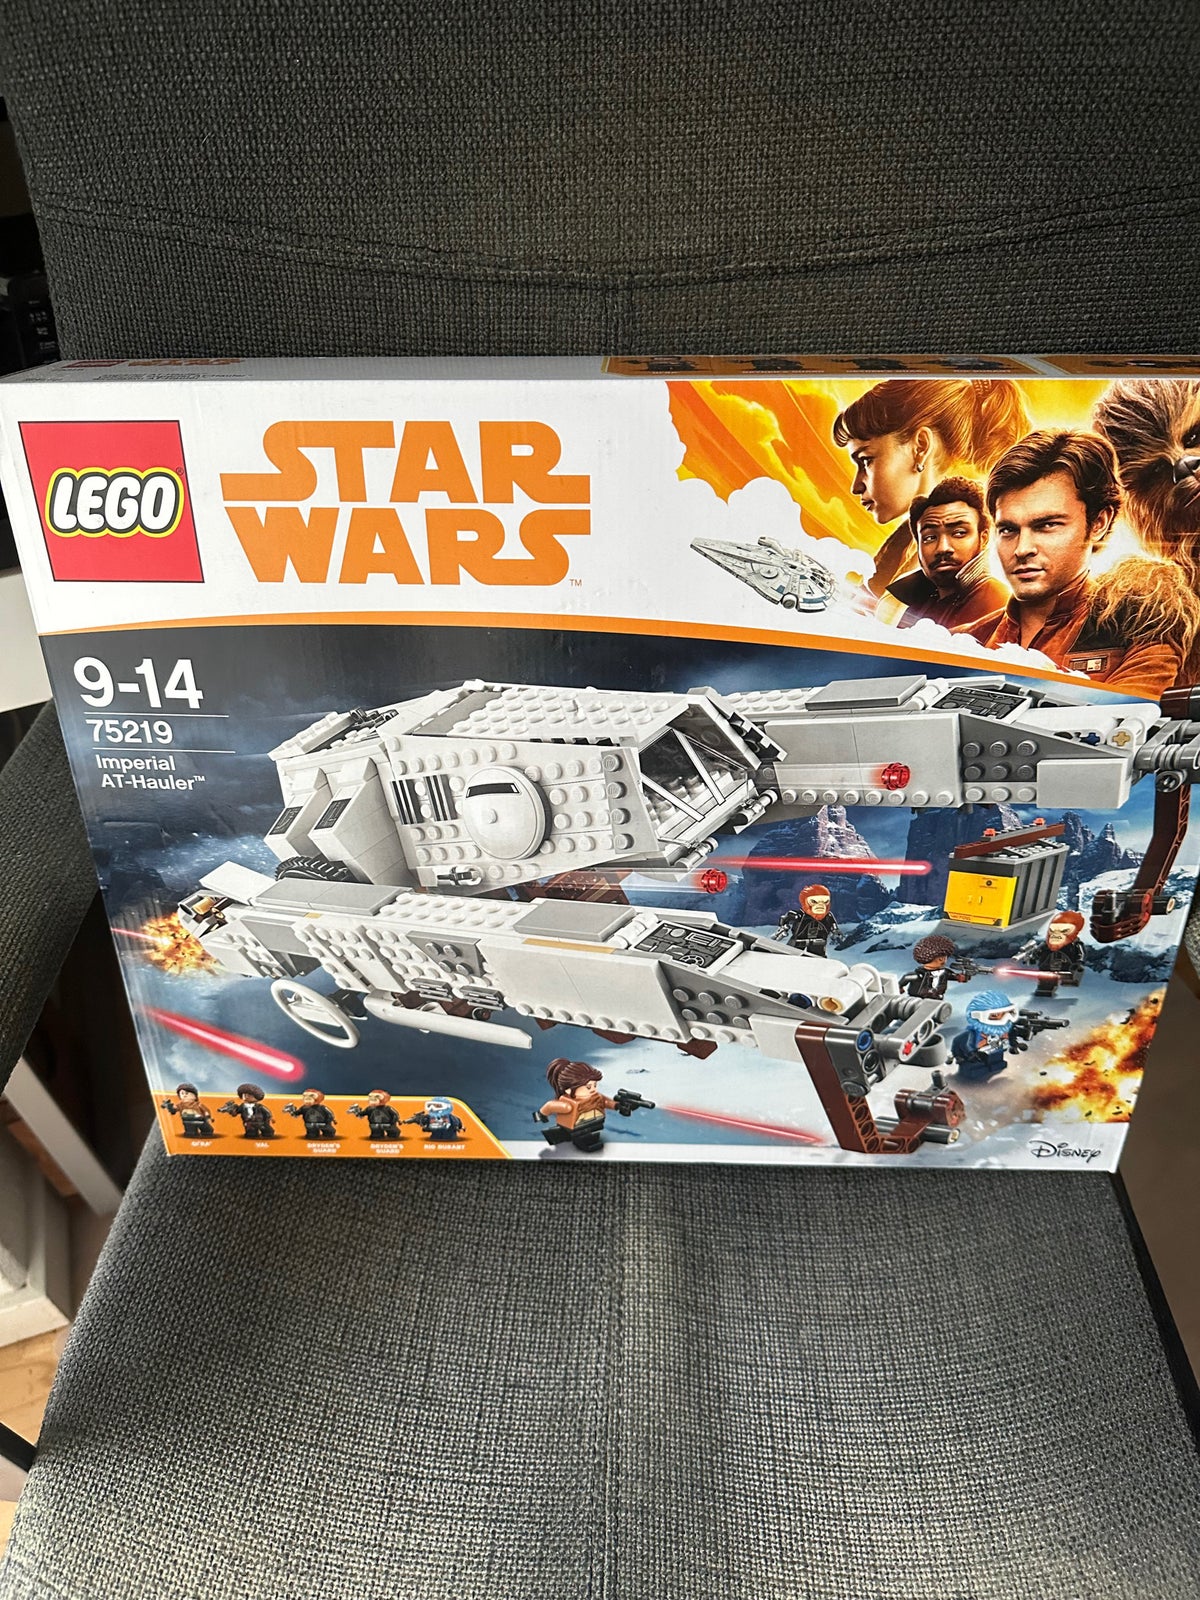 jeg fandt det ø Krav Lego Star Wars, 75219 – dba.dk – Køb og Salg af Nyt og Brugt